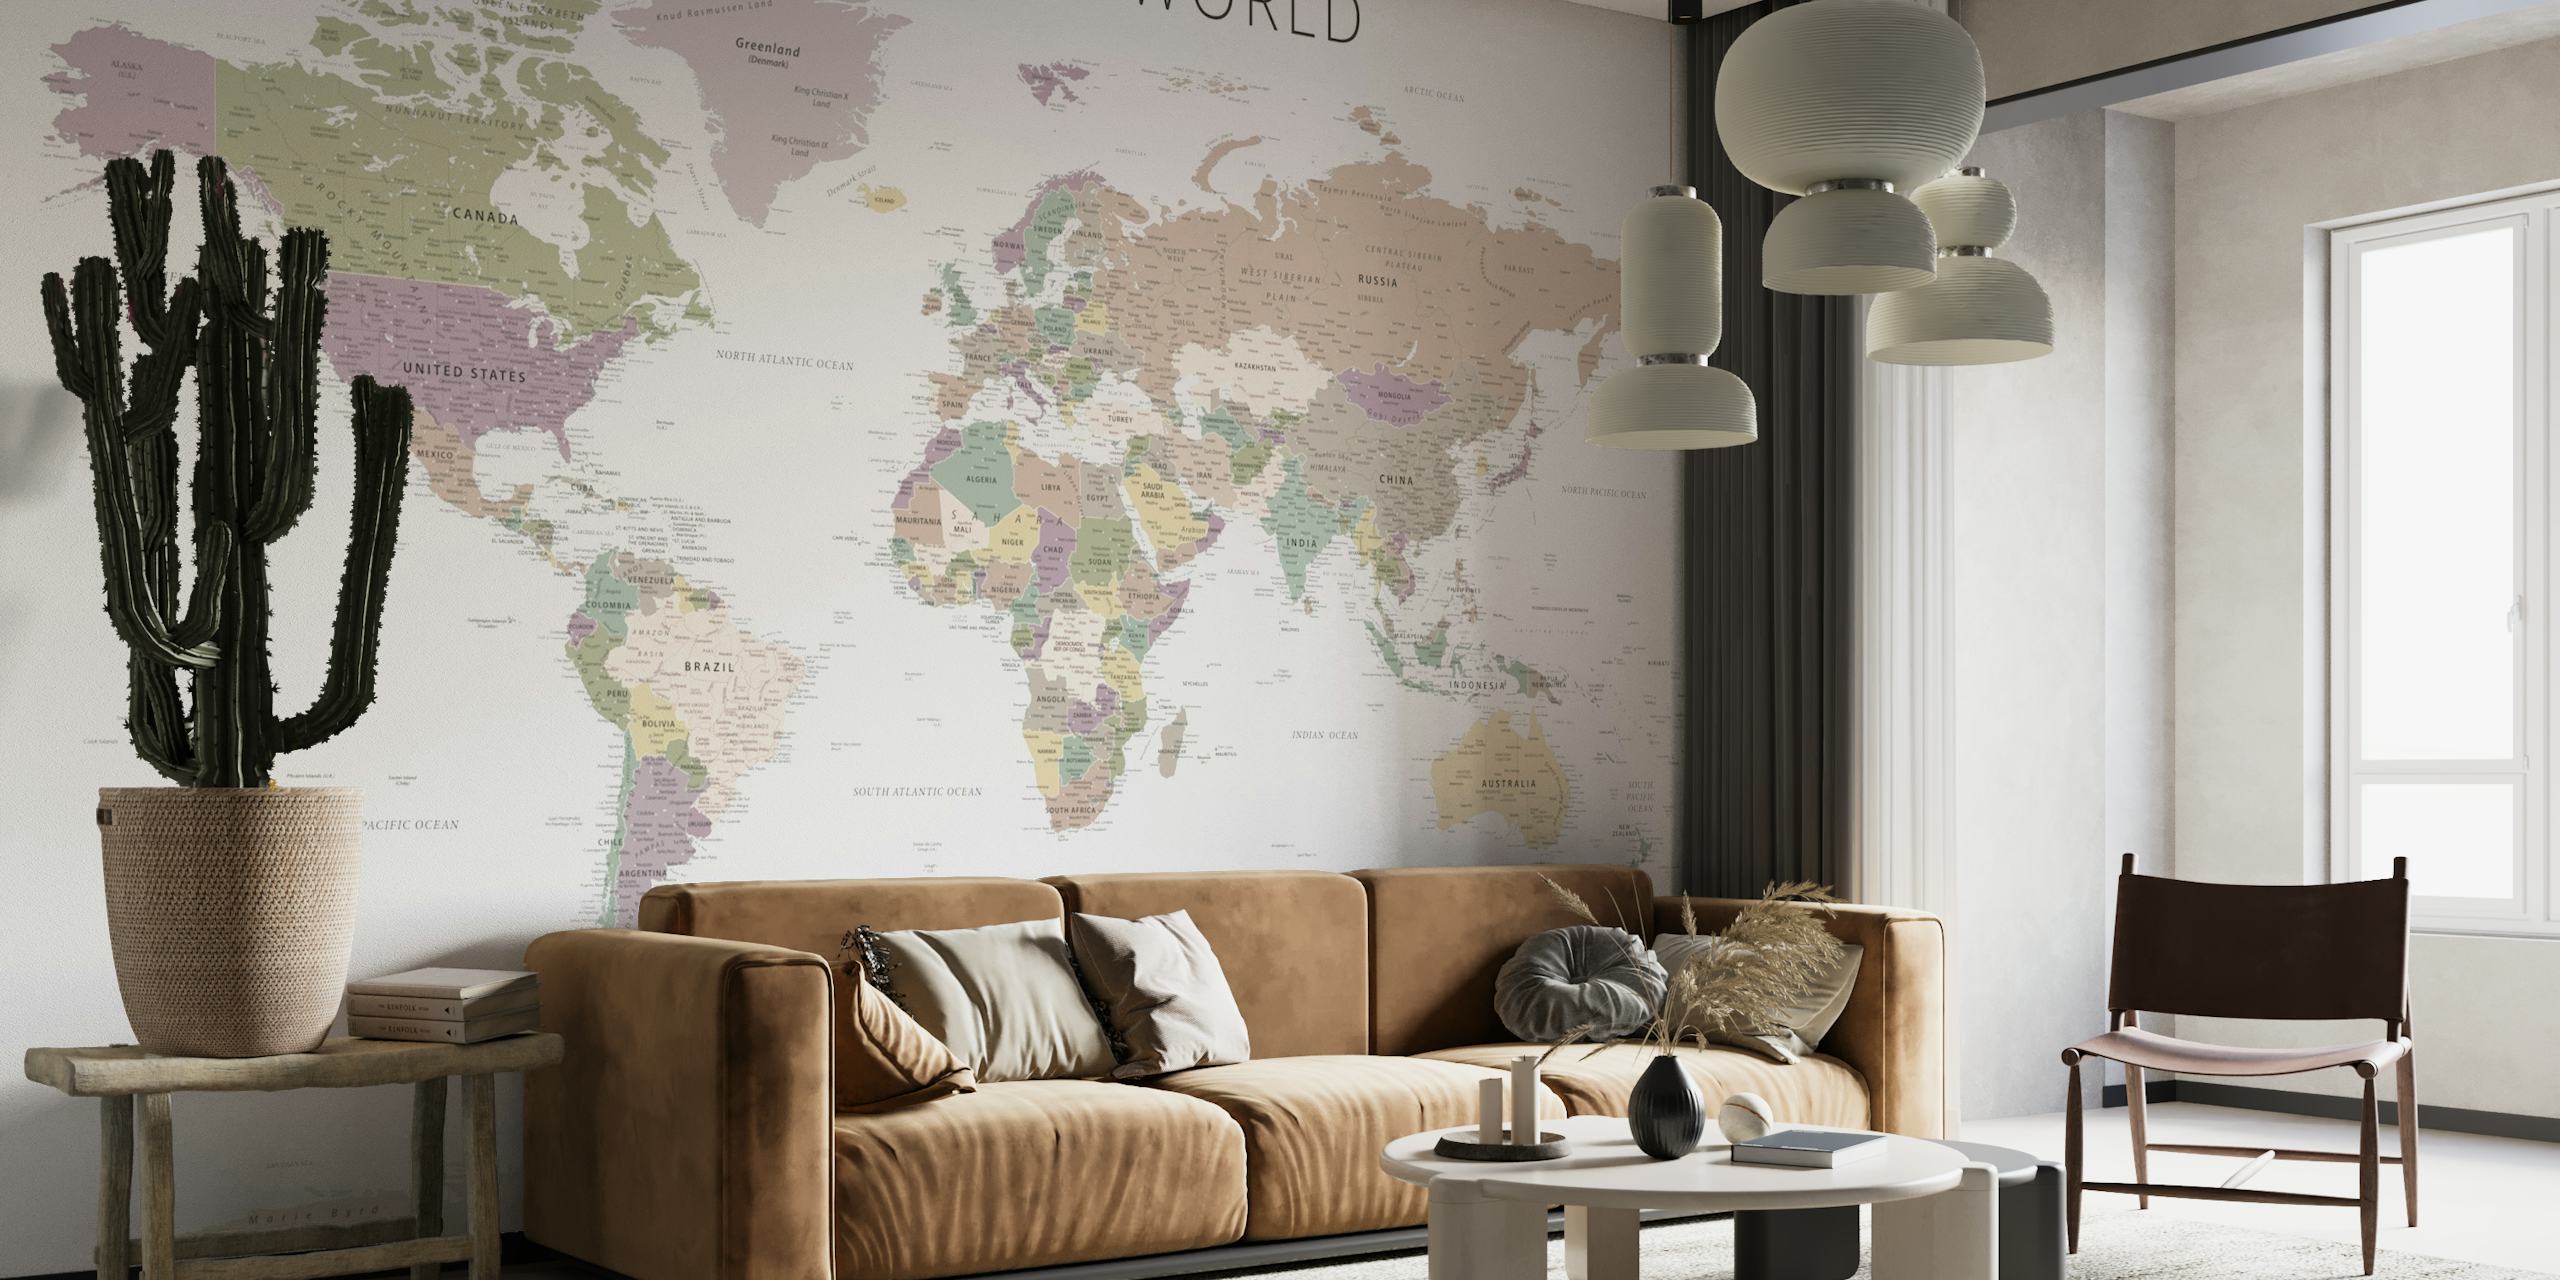 Mural de pared con un mapa mundial en tonos neutros apagados con países y fronteras detallados